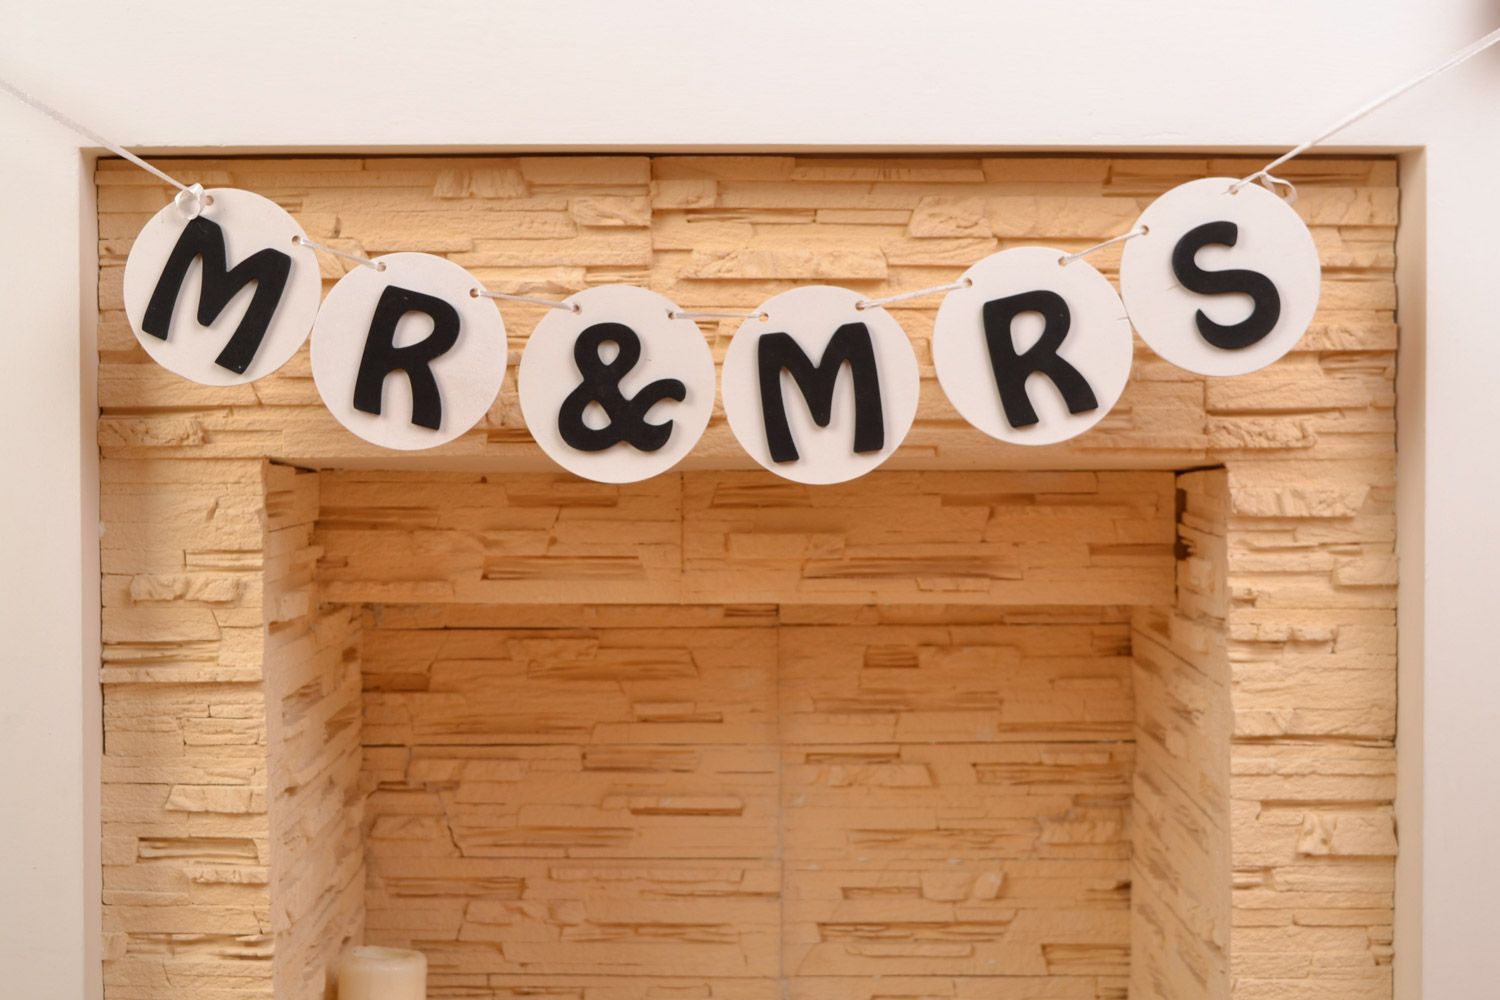 Свадебная гирлянда Mr&Mrs из фанеры небольшая на атласной ленте ручная работа фото 1